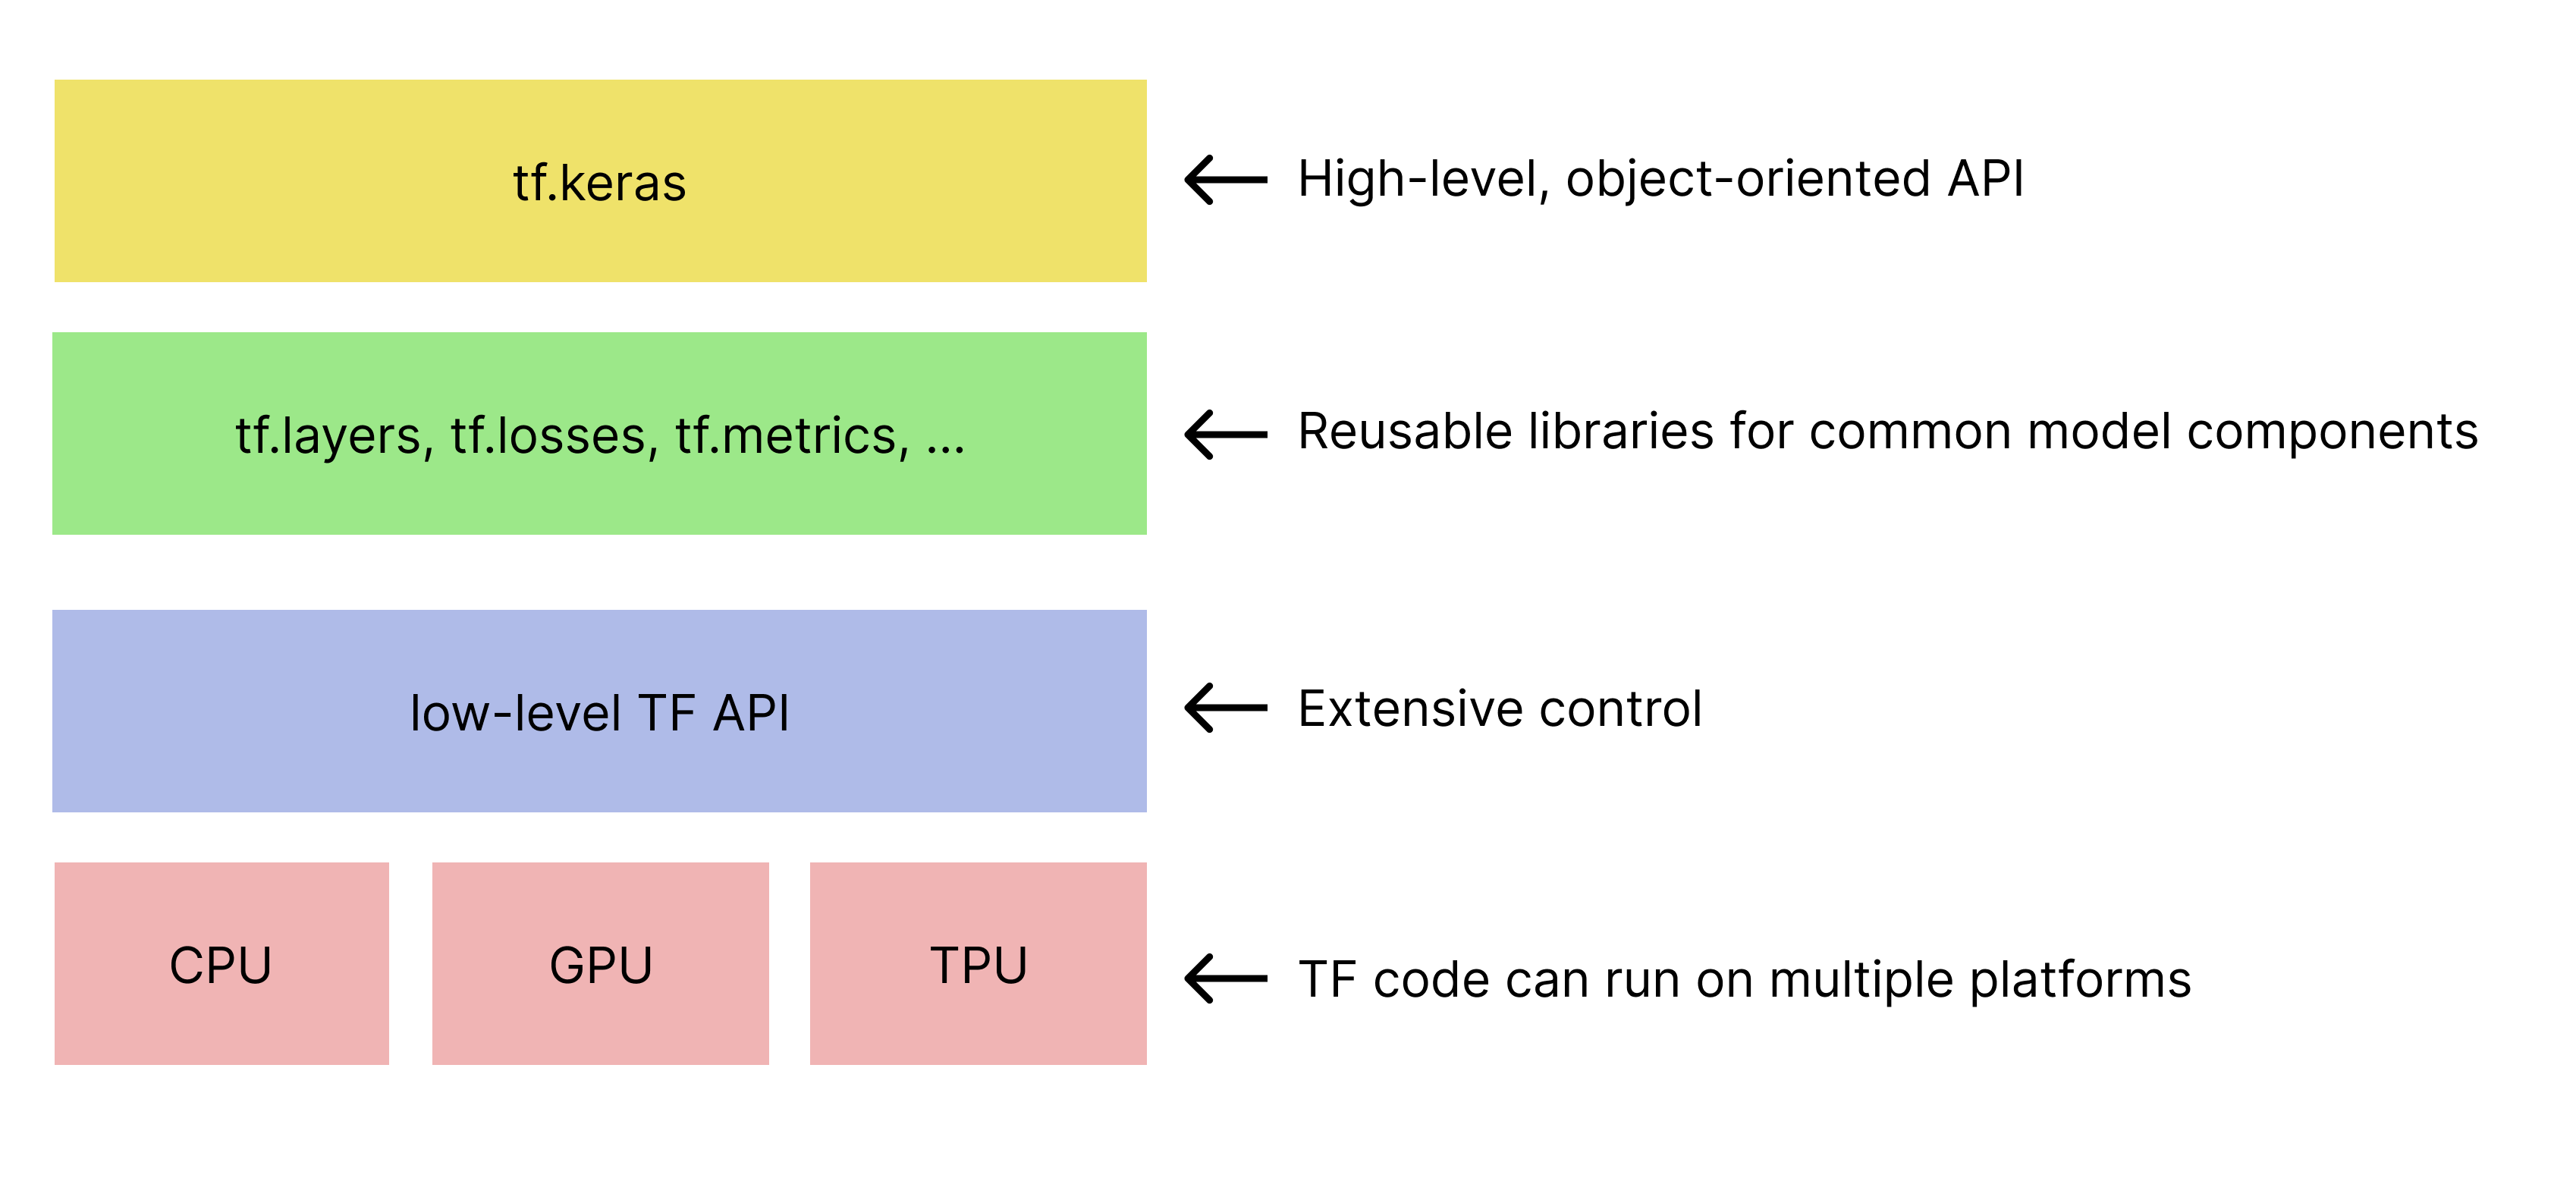 היררכיה פשוטה של ערכות כלים של TensorFlow. 
   tf.keras API מופיע למעלה.